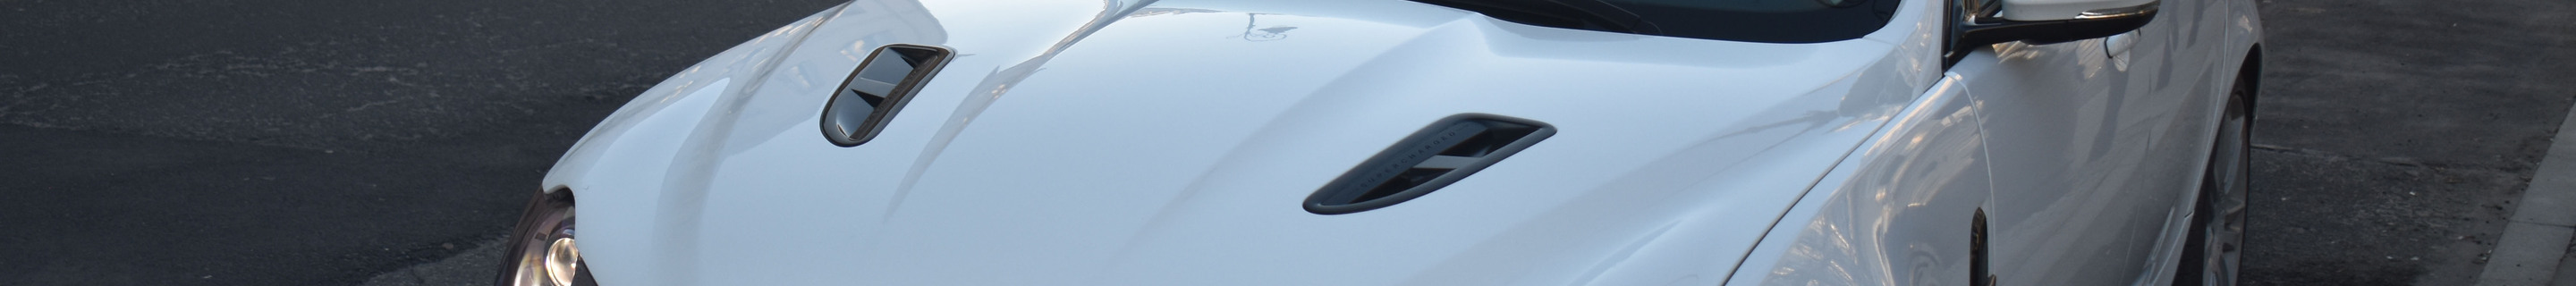 Jaguar XFR